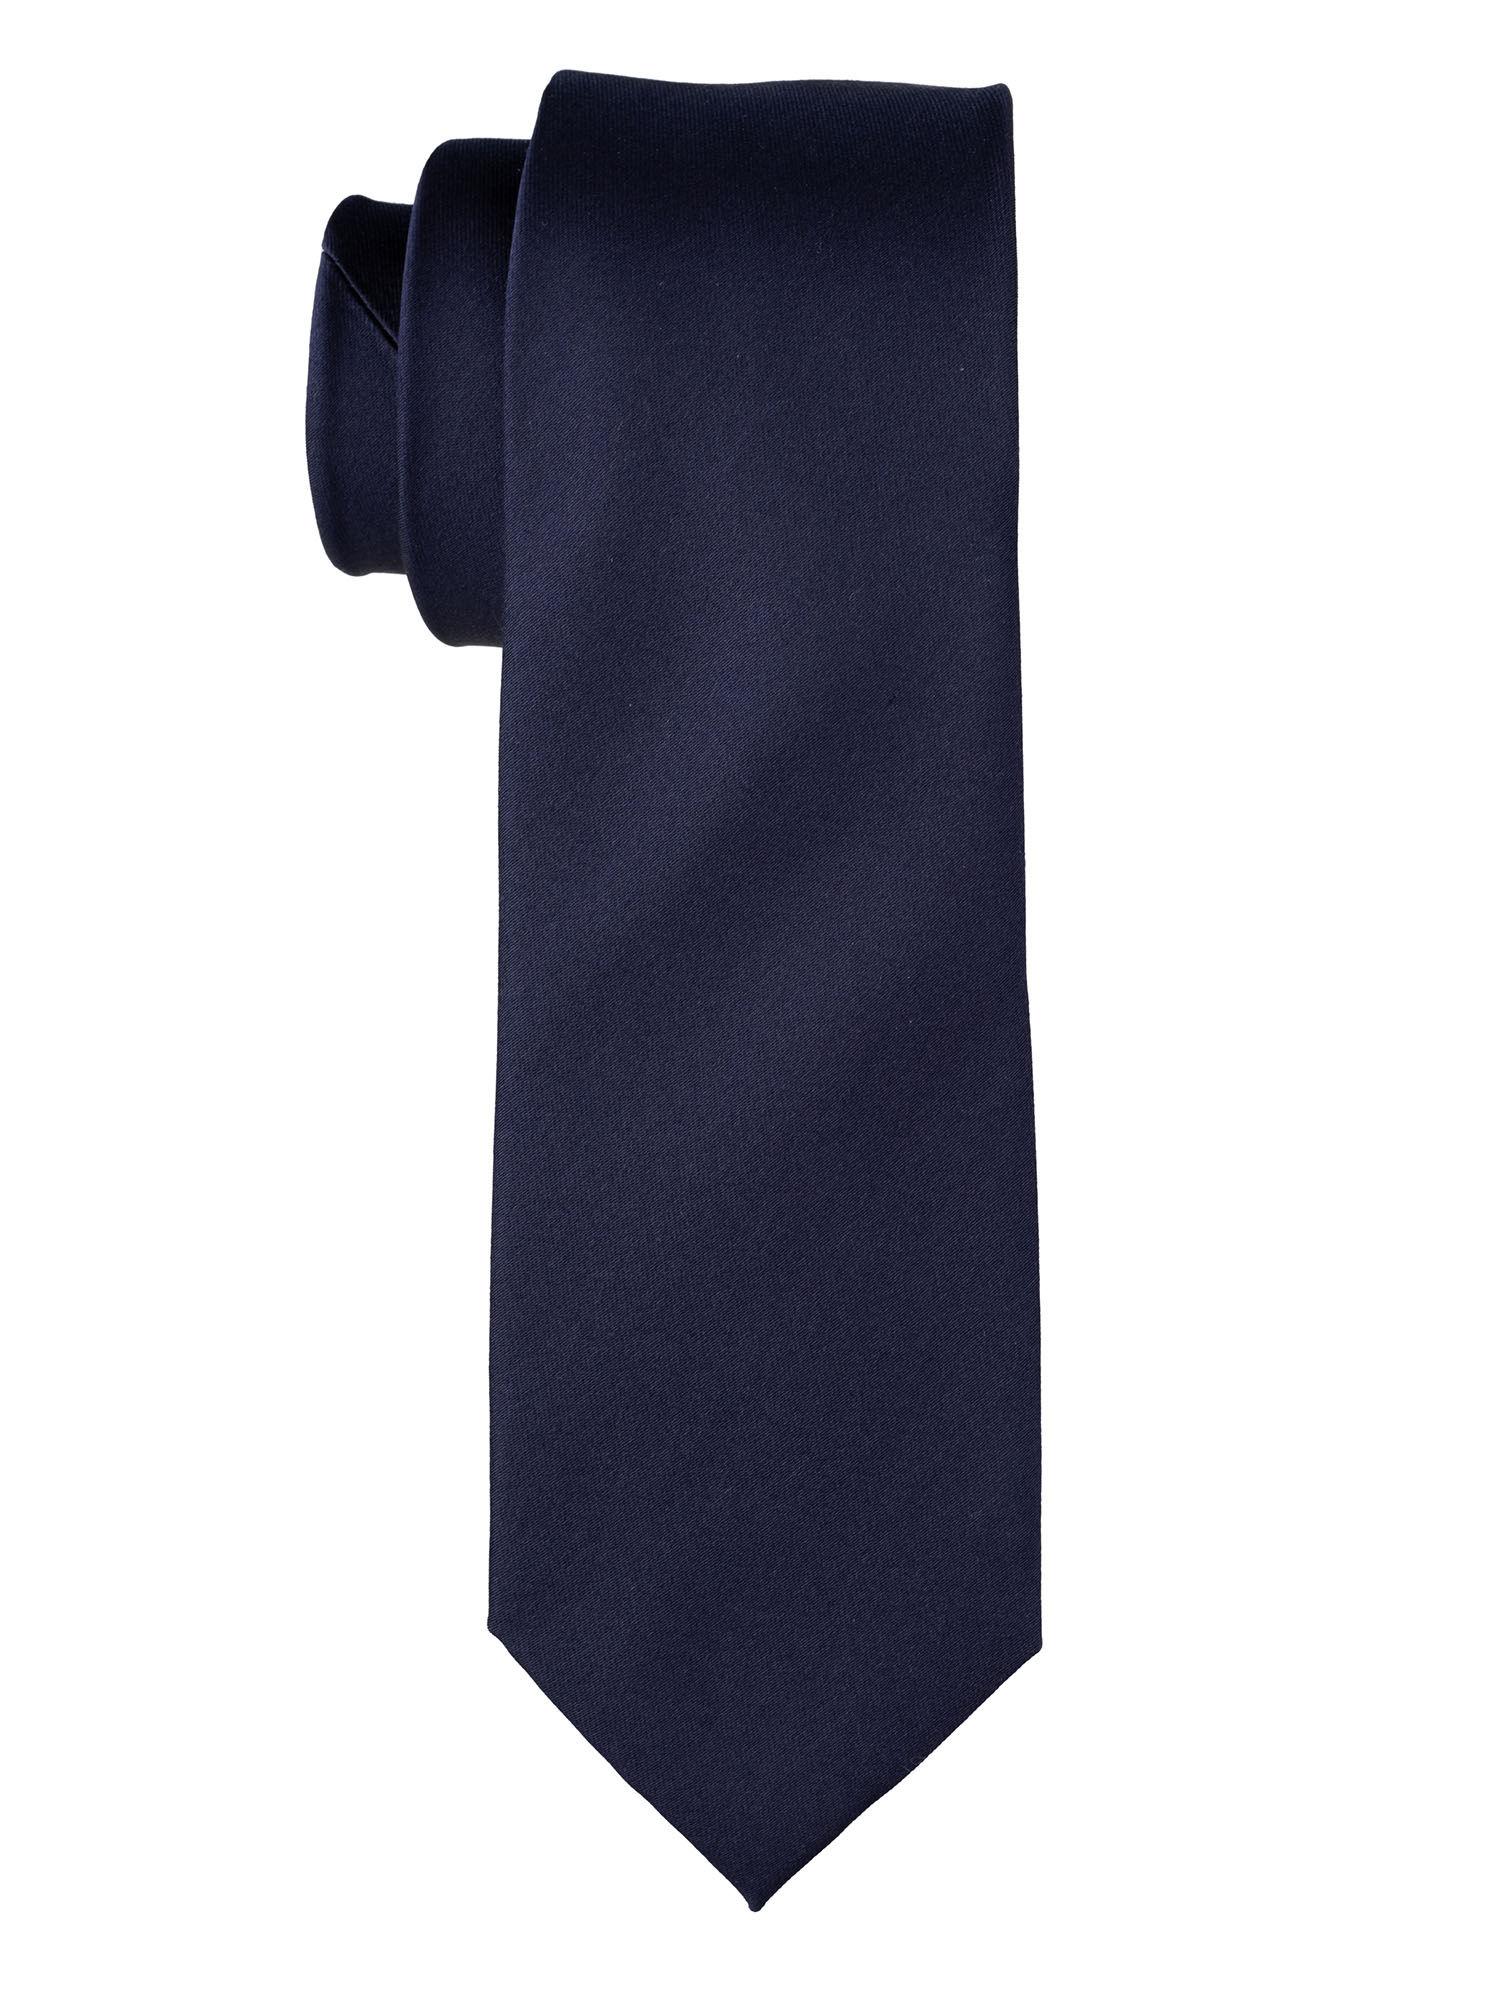 solid navy blue silk tie